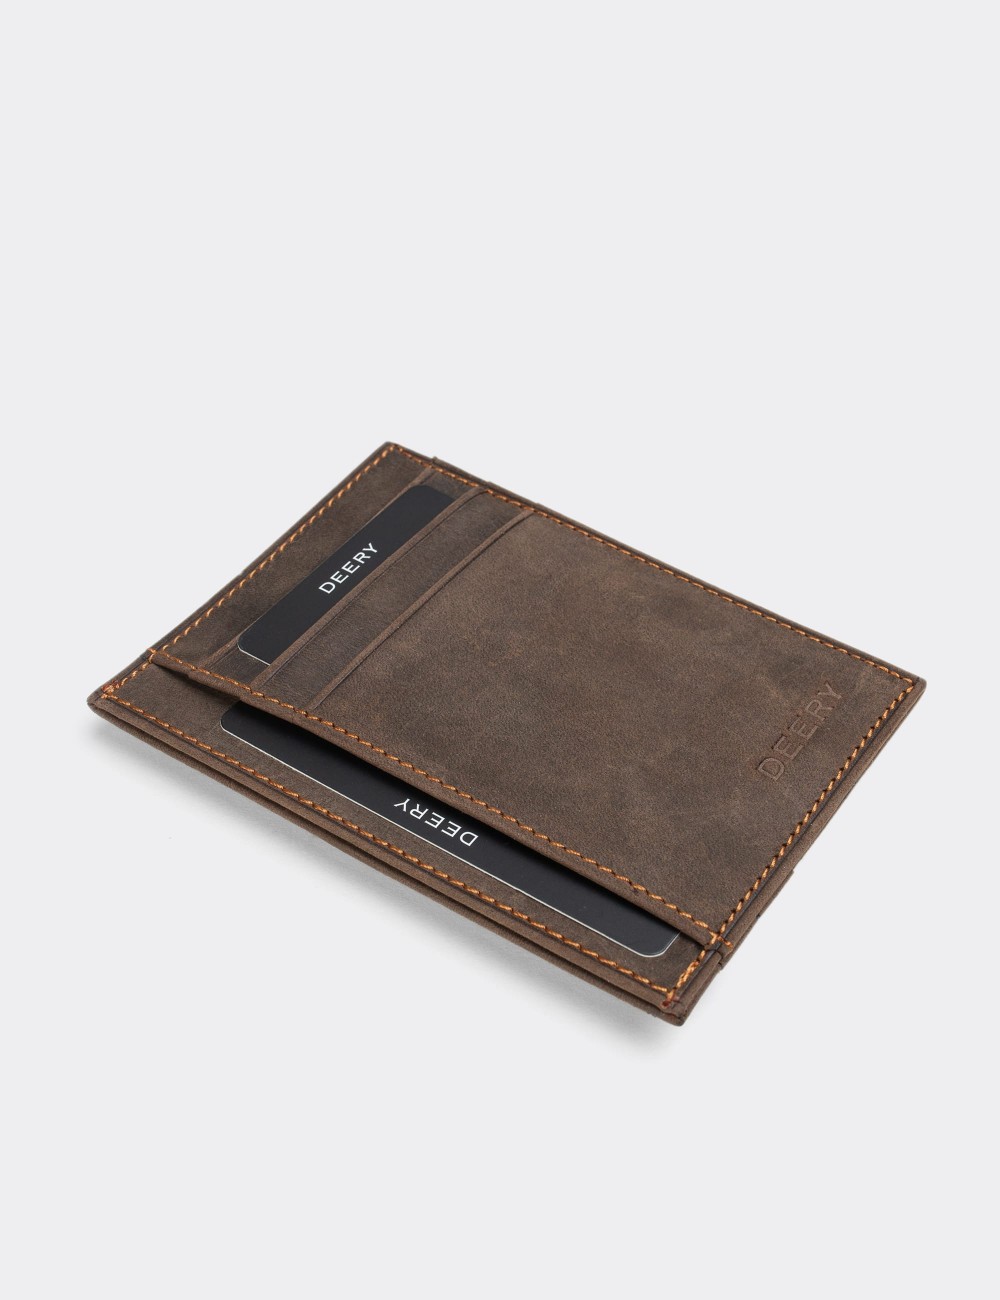  Leather Brown Men's Wallet - 0588CMKHVZ01